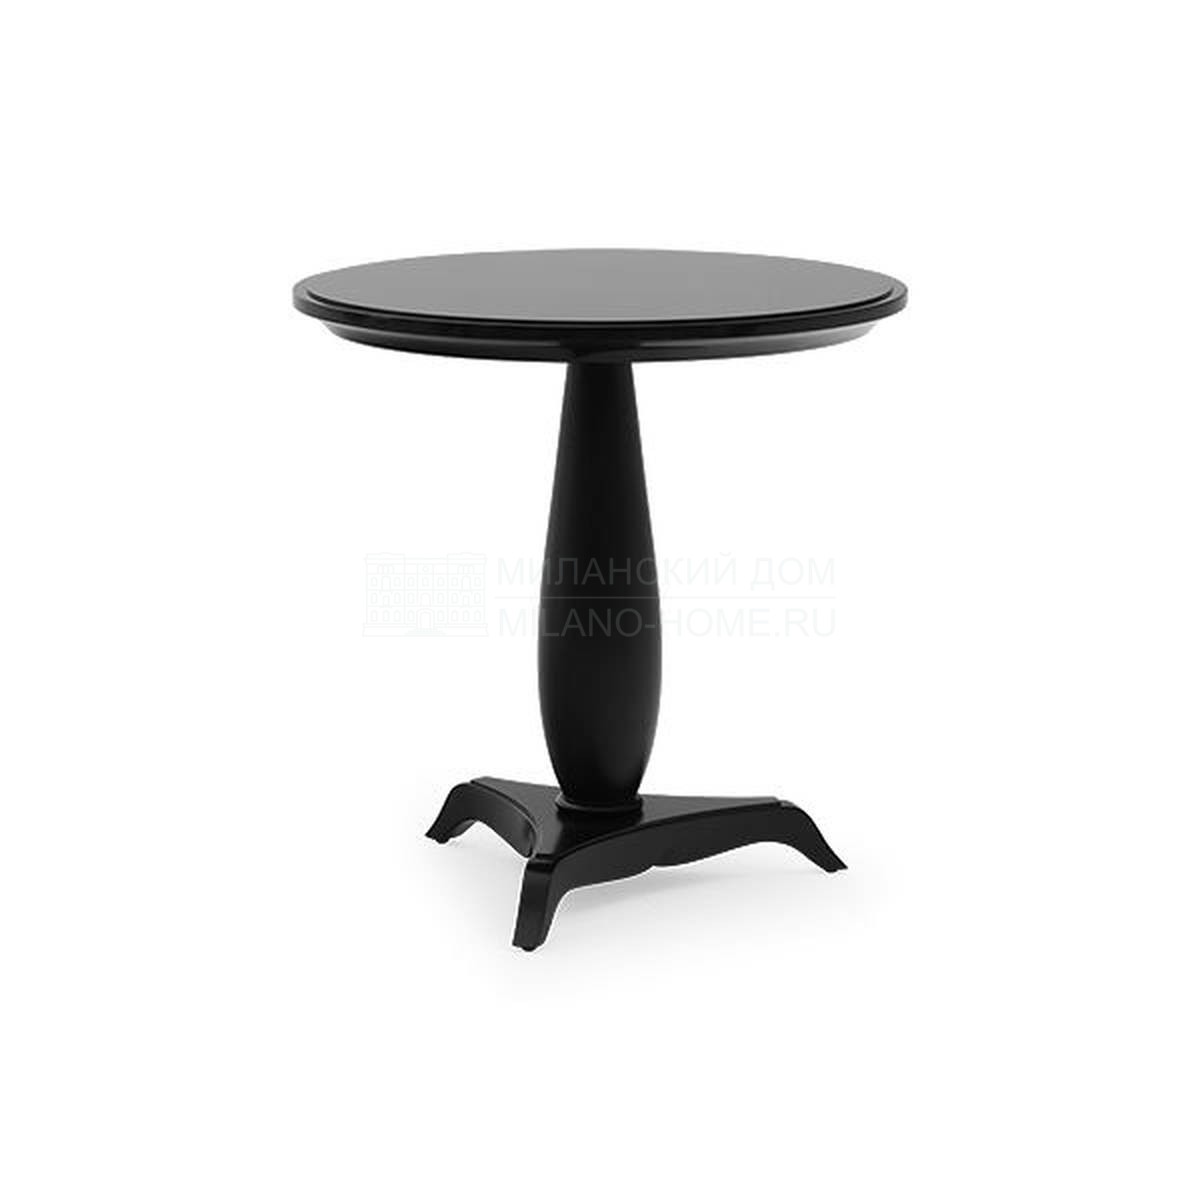 Кофейный столик Hugo side table из США фабрики CHRISTOPHER GUY